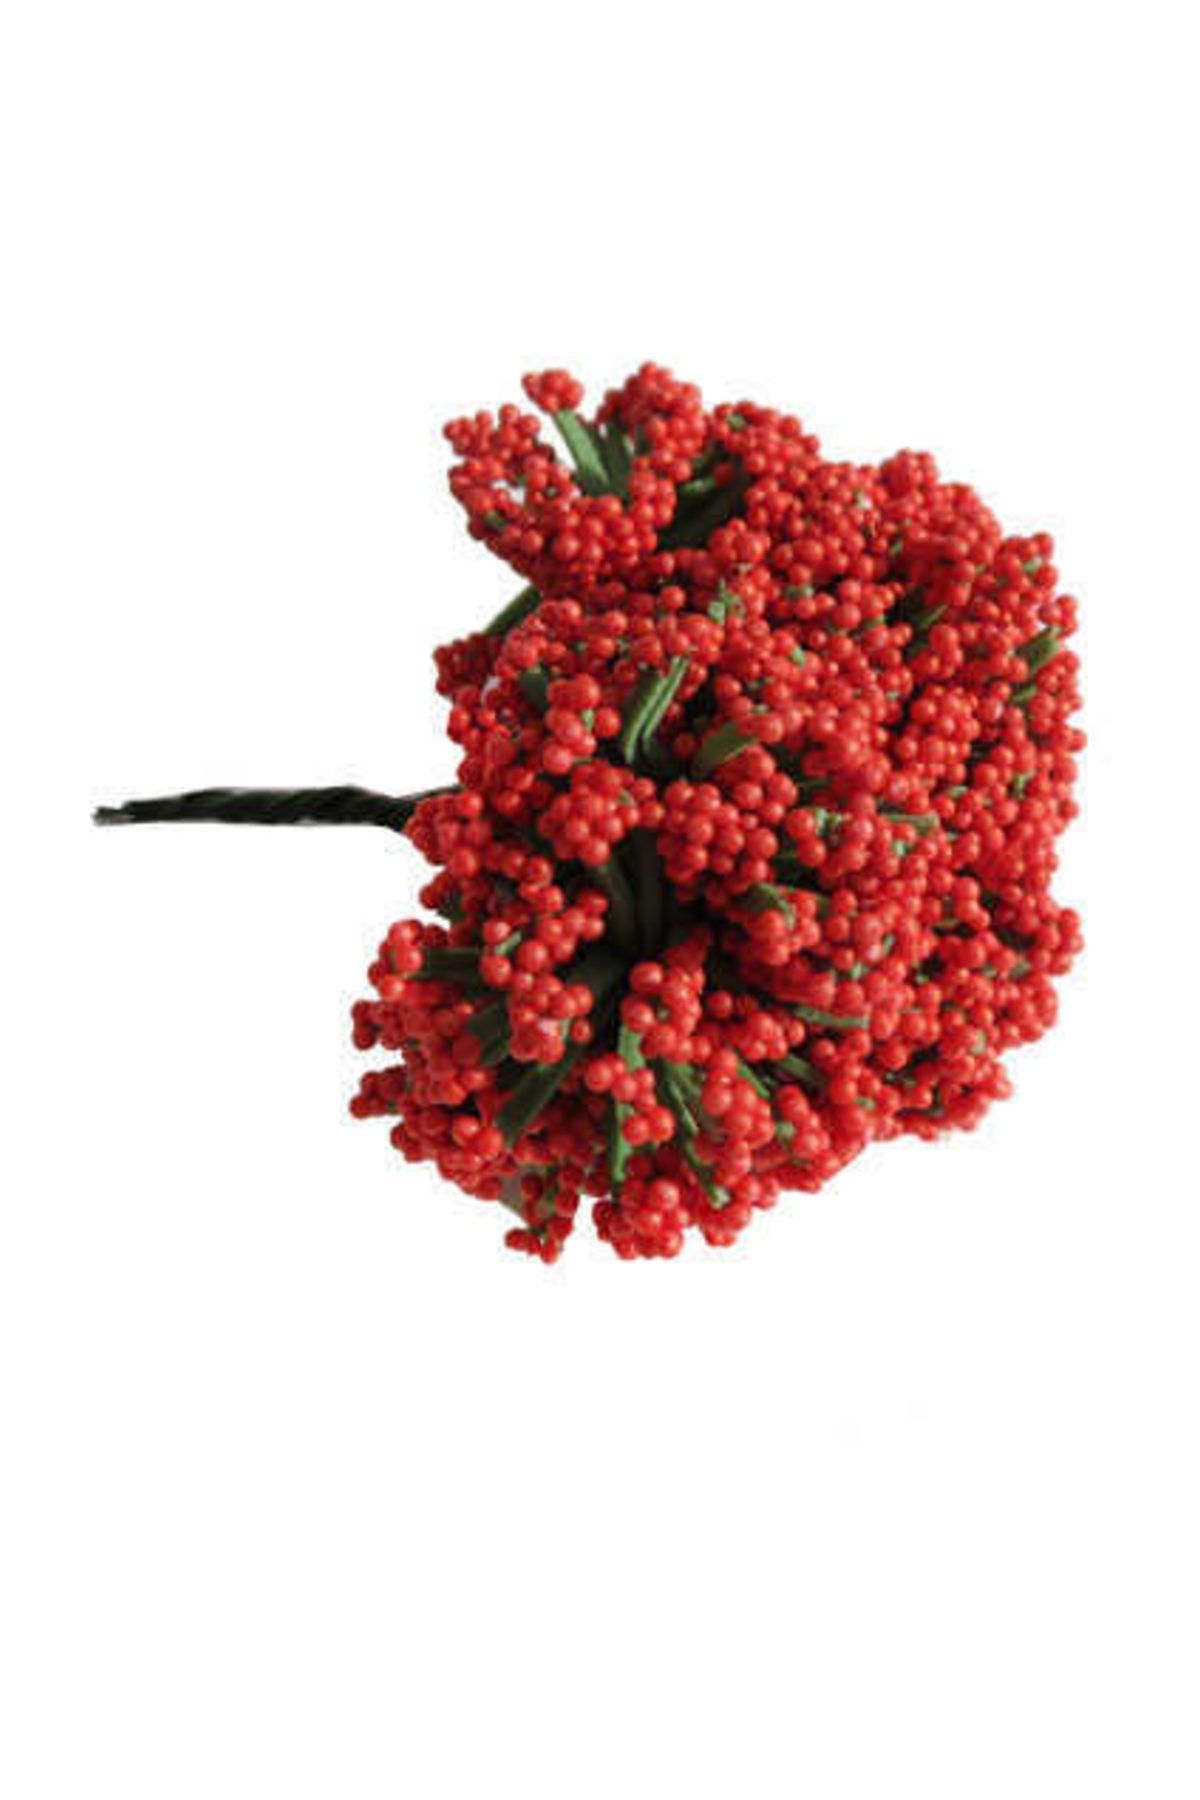 ELITETIME Cipso Yapay Çiçek Kırmızı ( 3,5 cm* 3,5 cm ) ( 144 Adet)